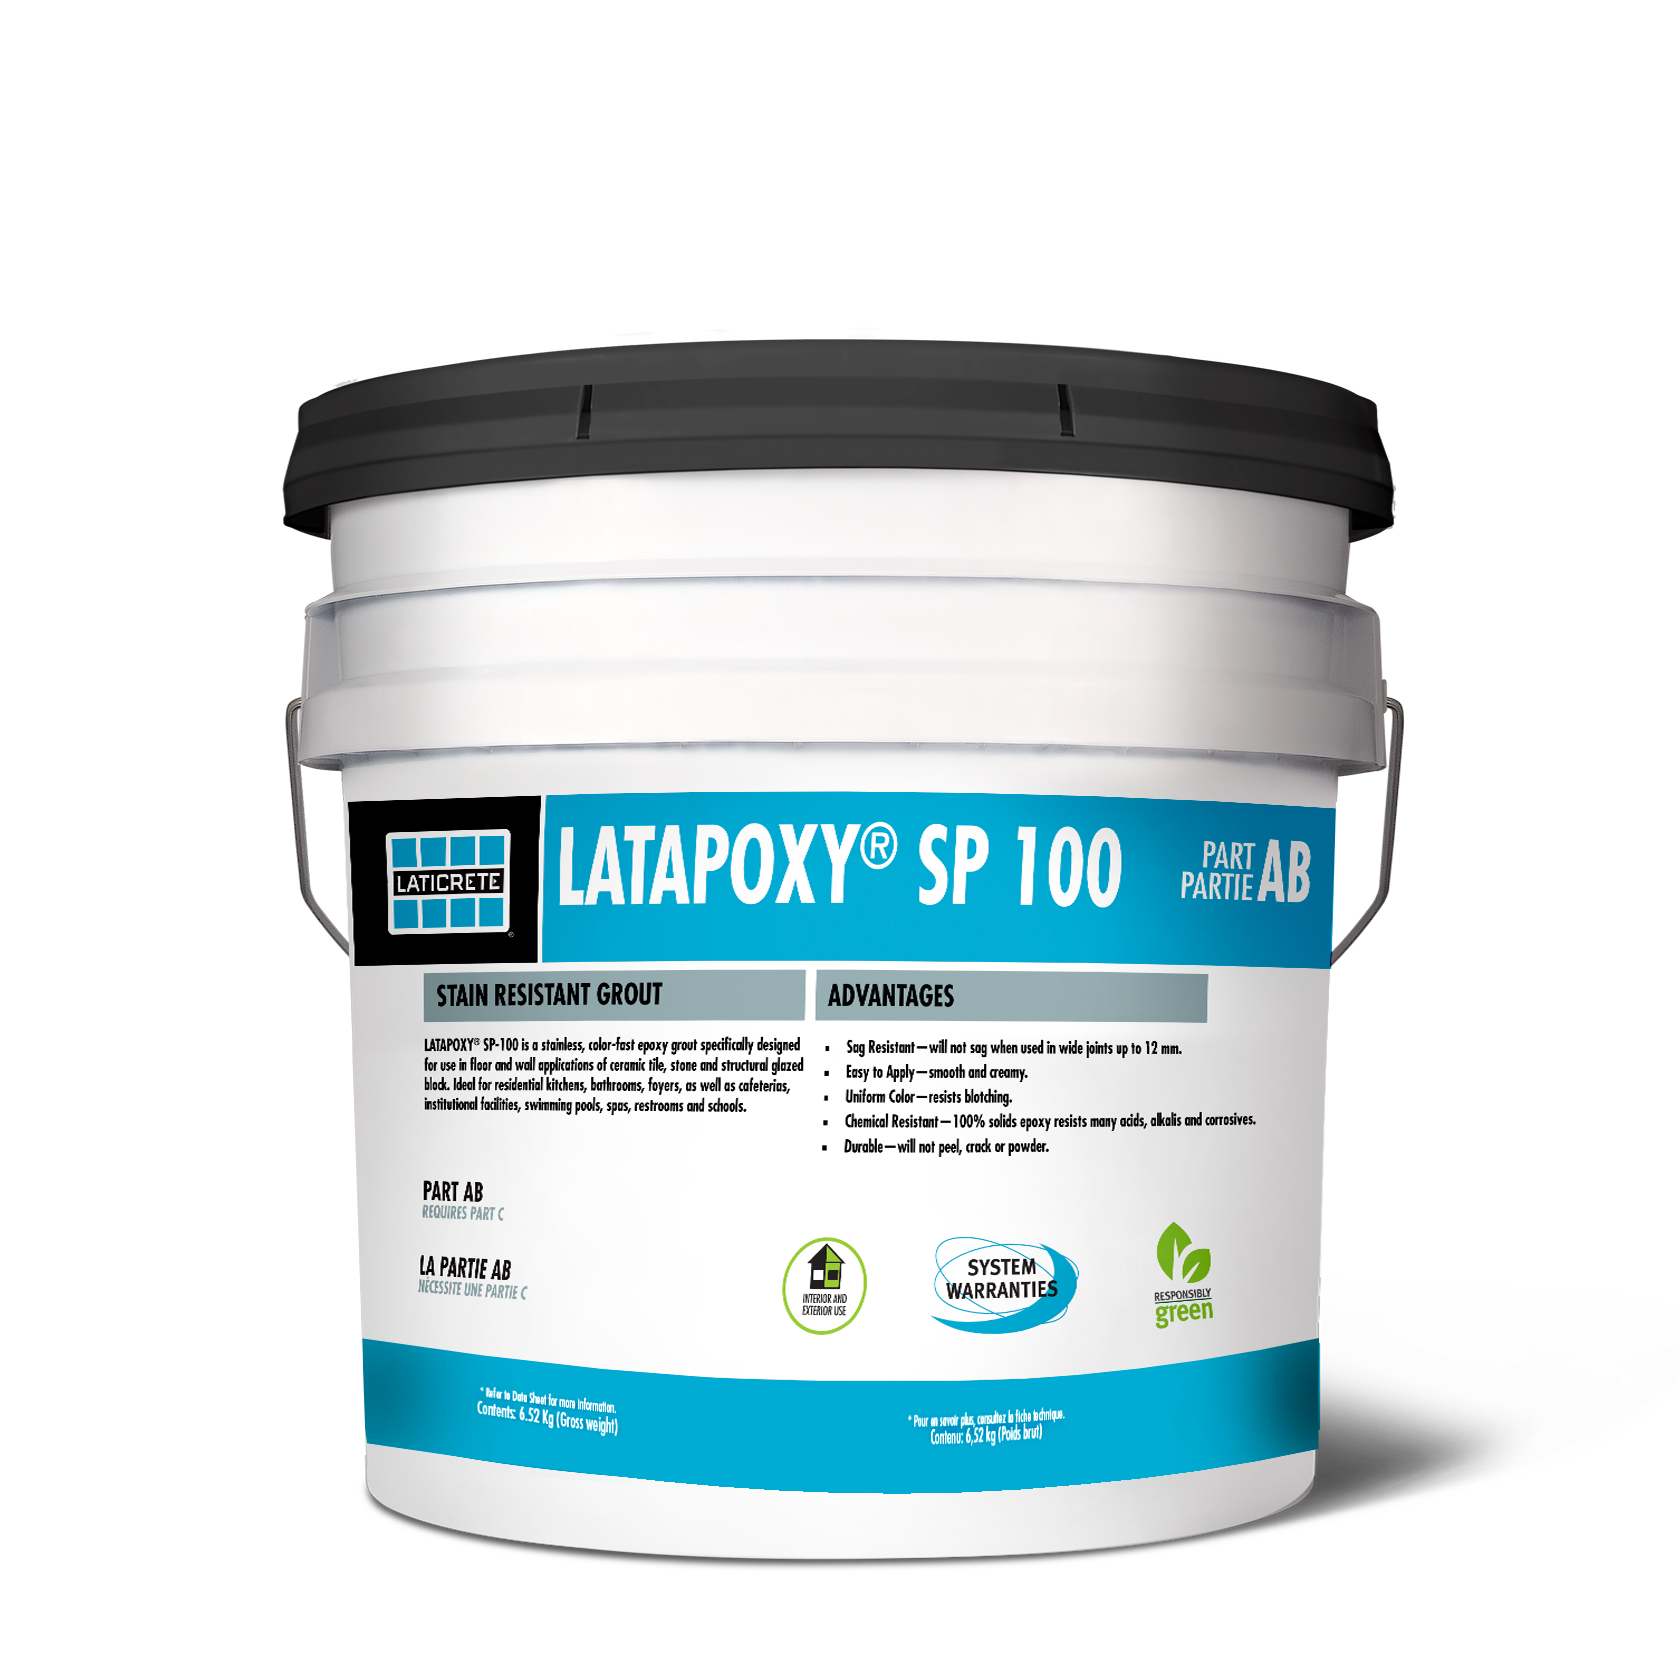 LATAPOXY SP 100